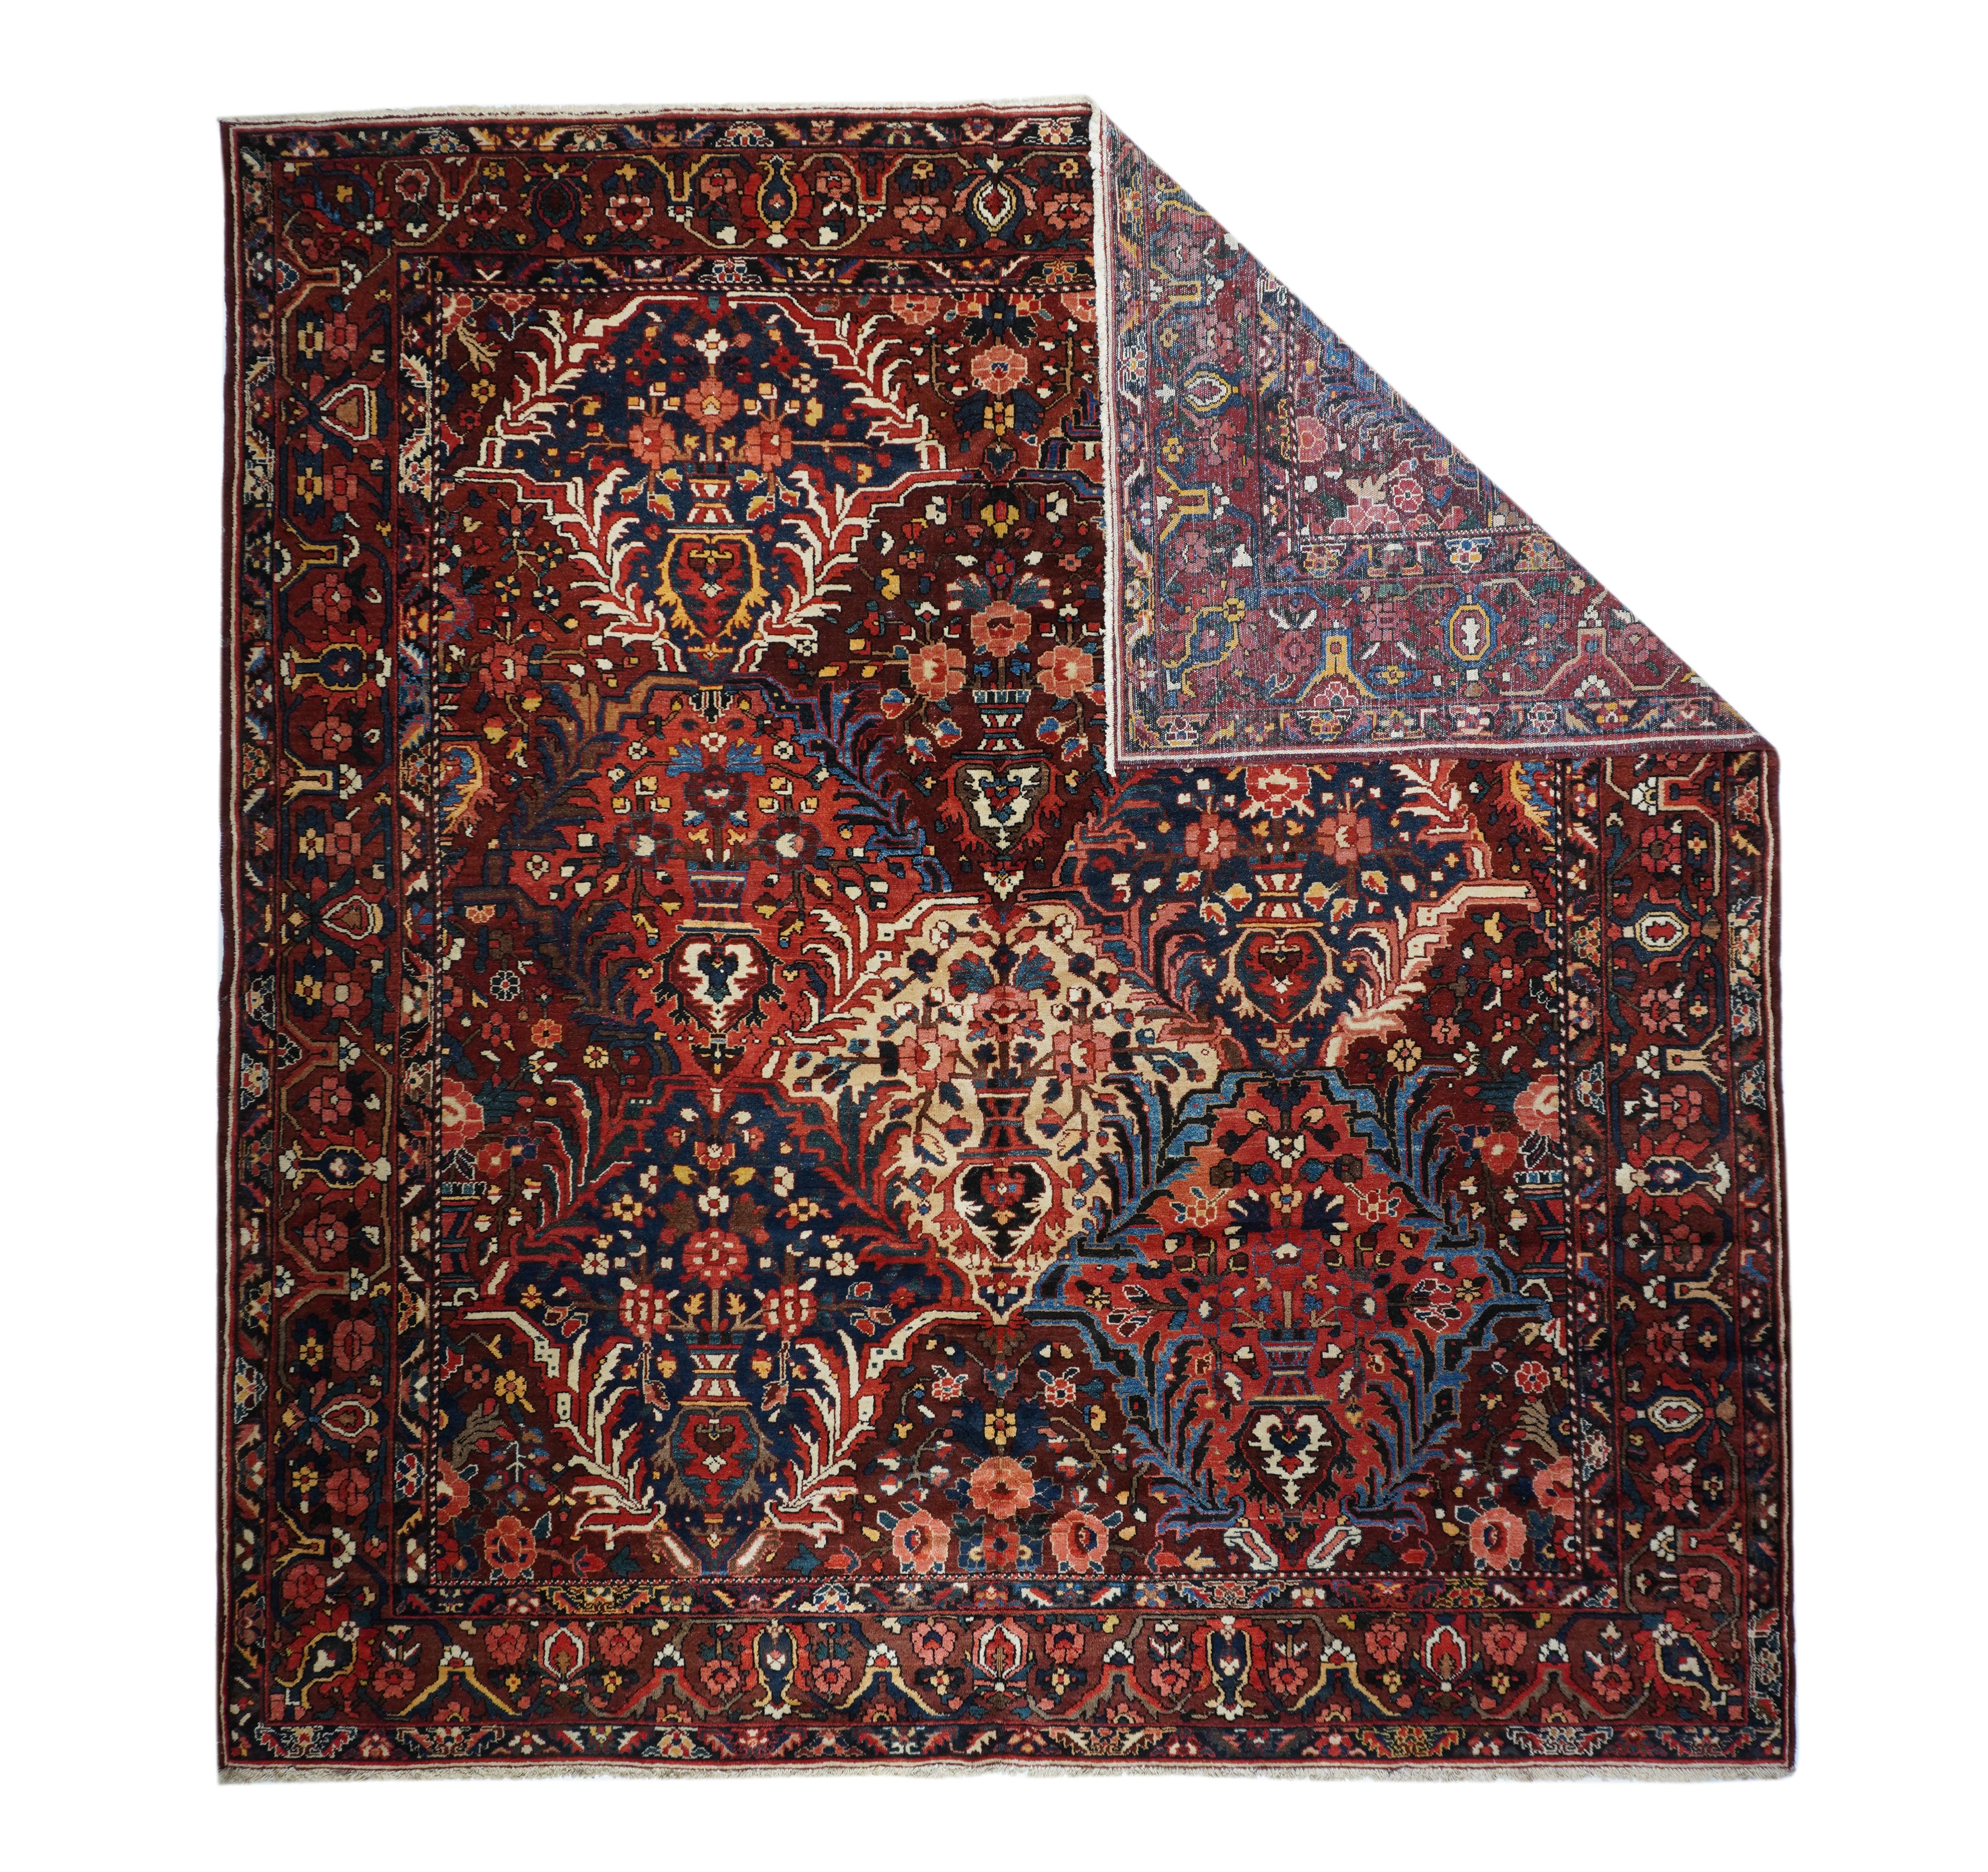 Le tapis Bakhtiari mesure 11'2'' x 11'10''.